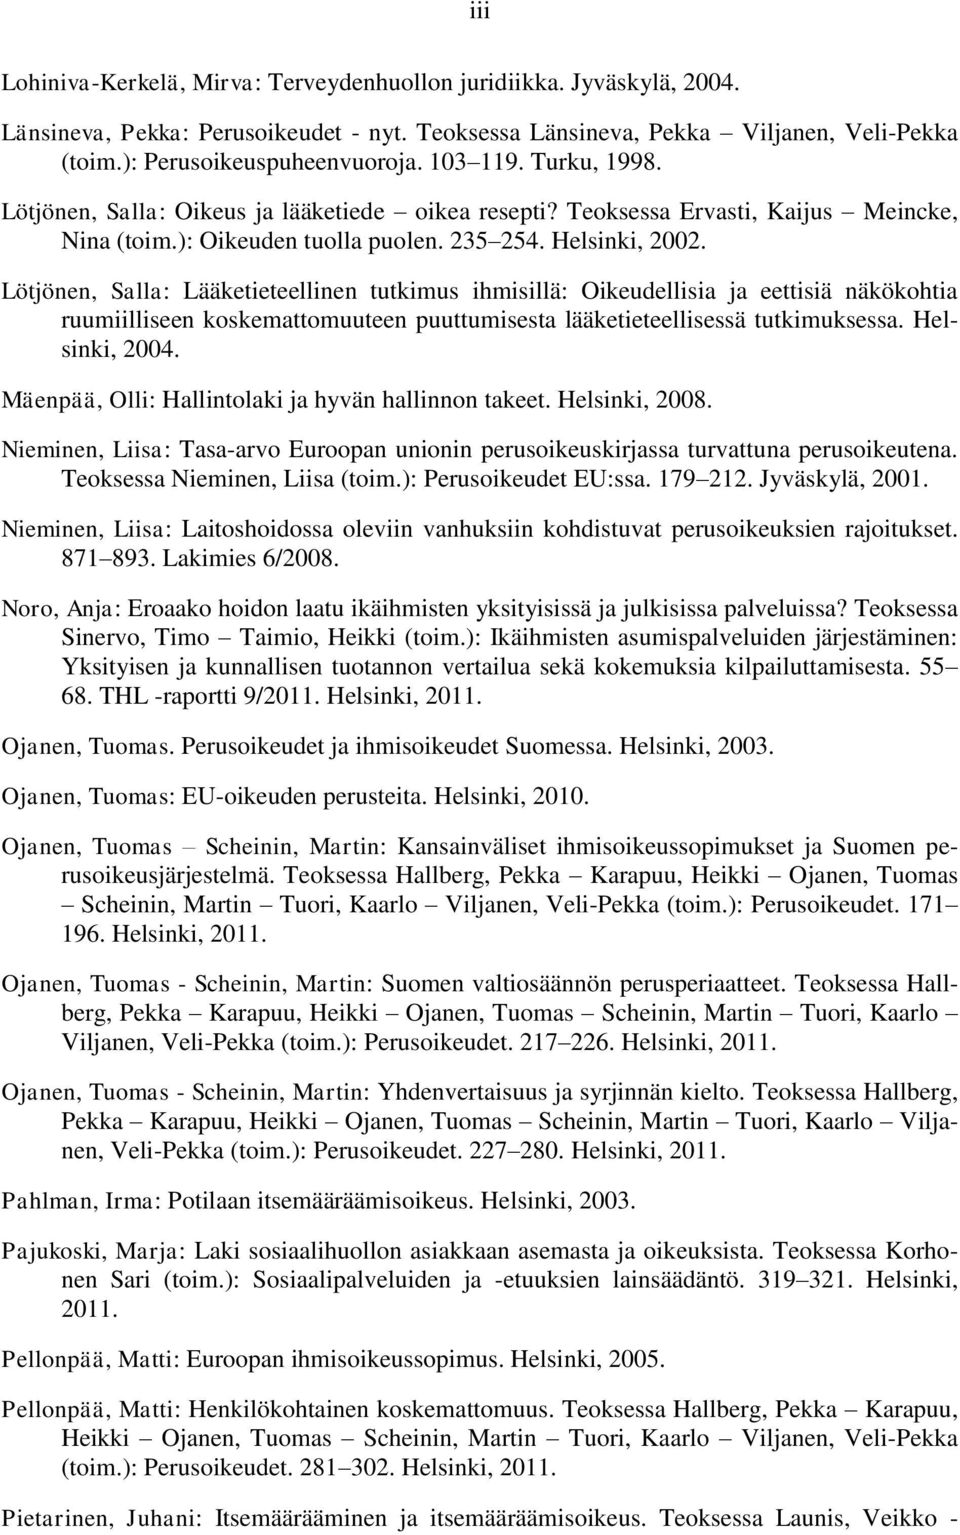 Lötjönen, Salla: Lääketieteellinen tutkimus ihmisillä: Oikeudellisia ja eettisiä näkökohtia ruumiilliseen koskemattomuuteen puuttumisesta lääketieteellisessä tutkimuksessa. Helsinki, 2004.